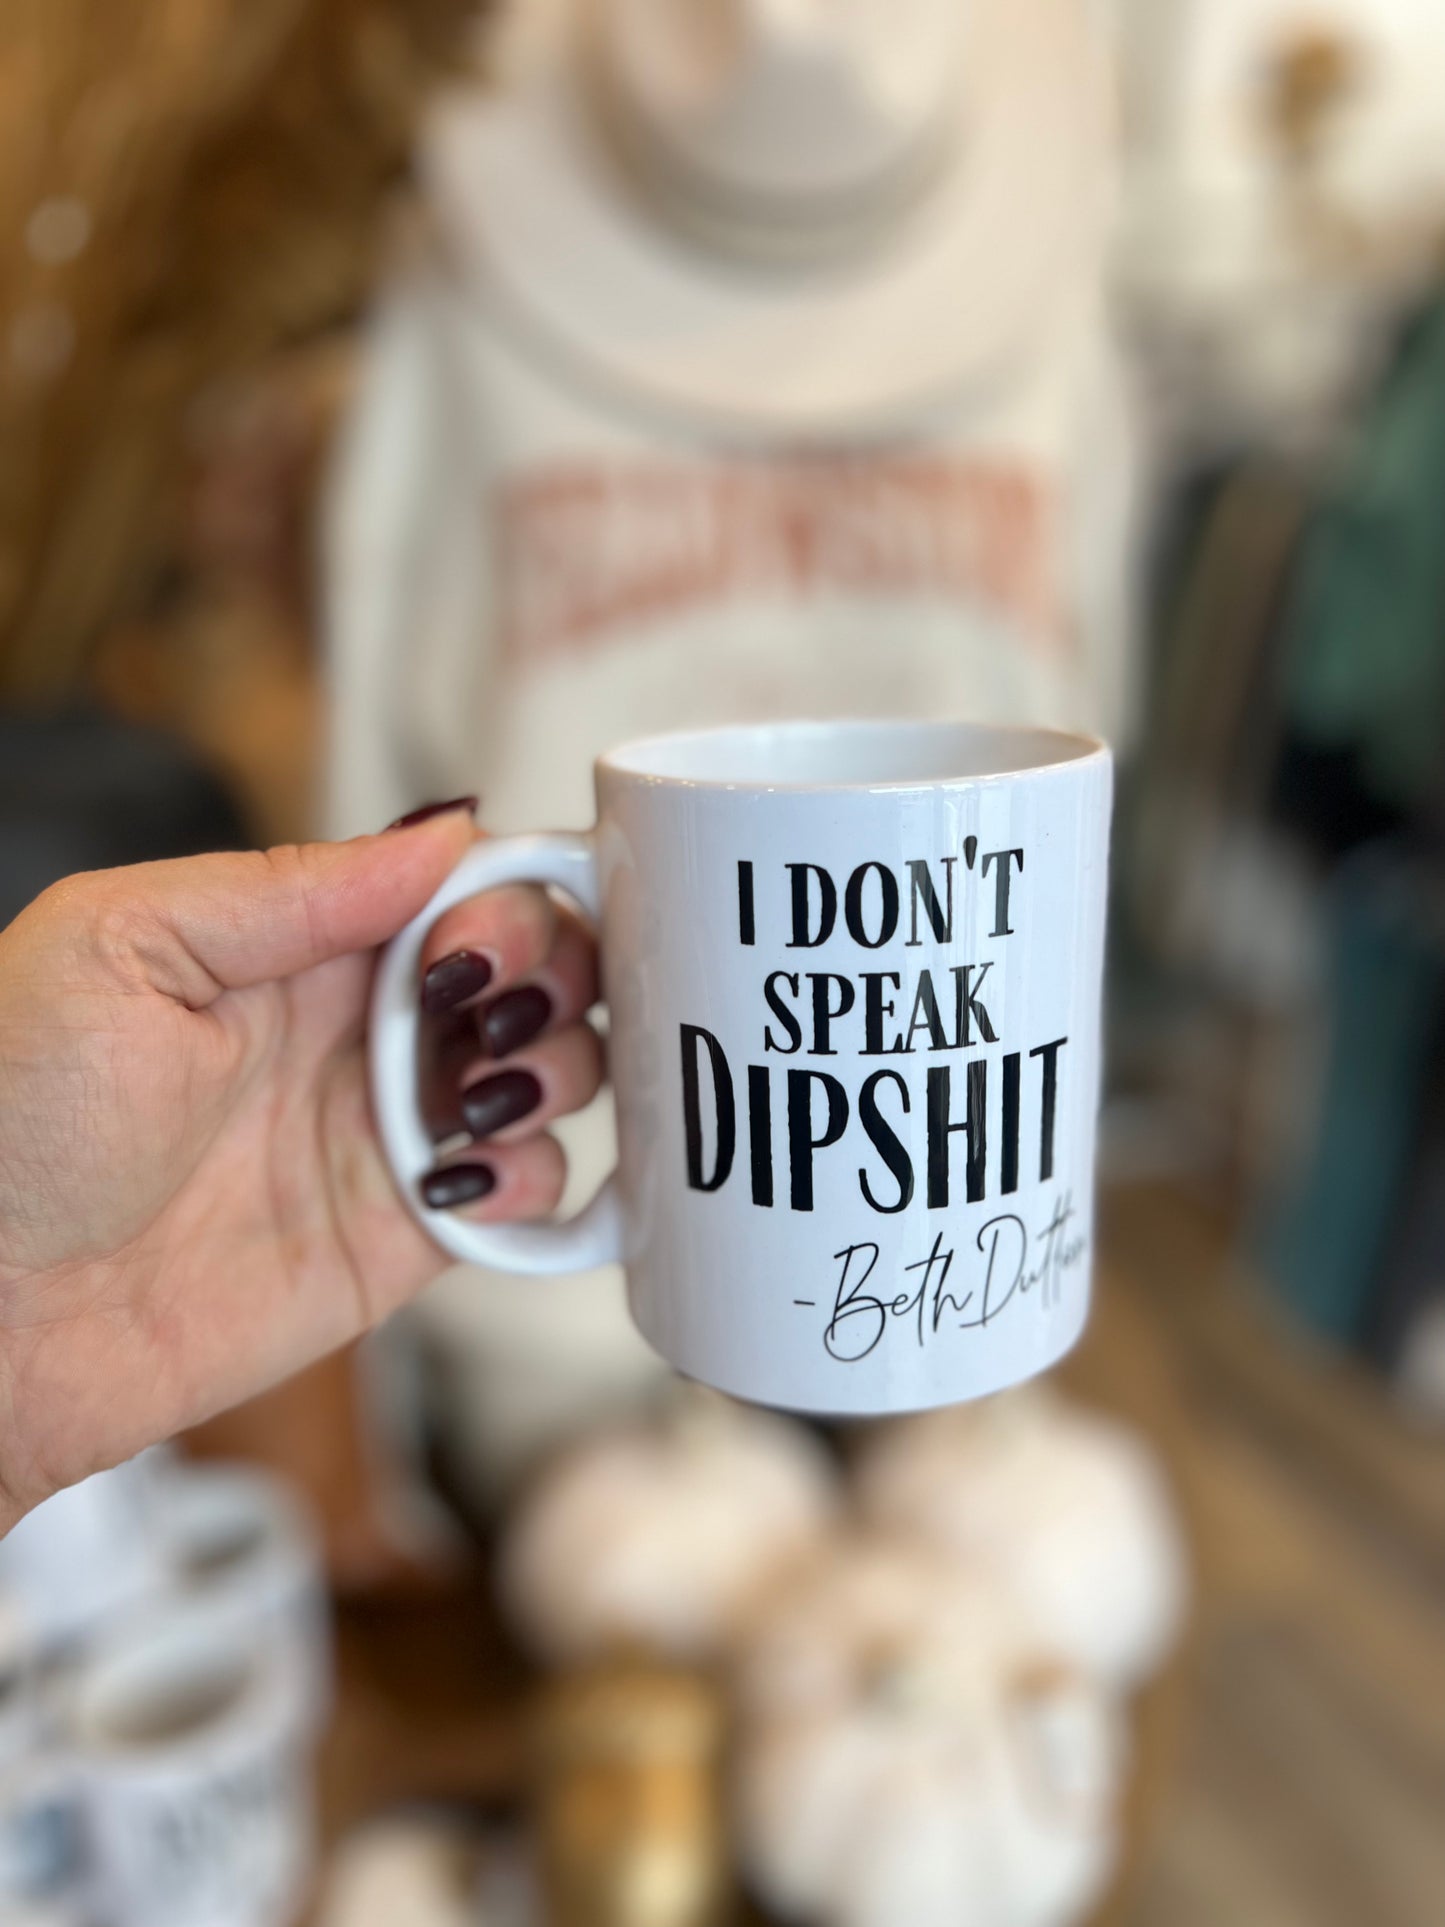 I DONT SPEAK DIPSHIT